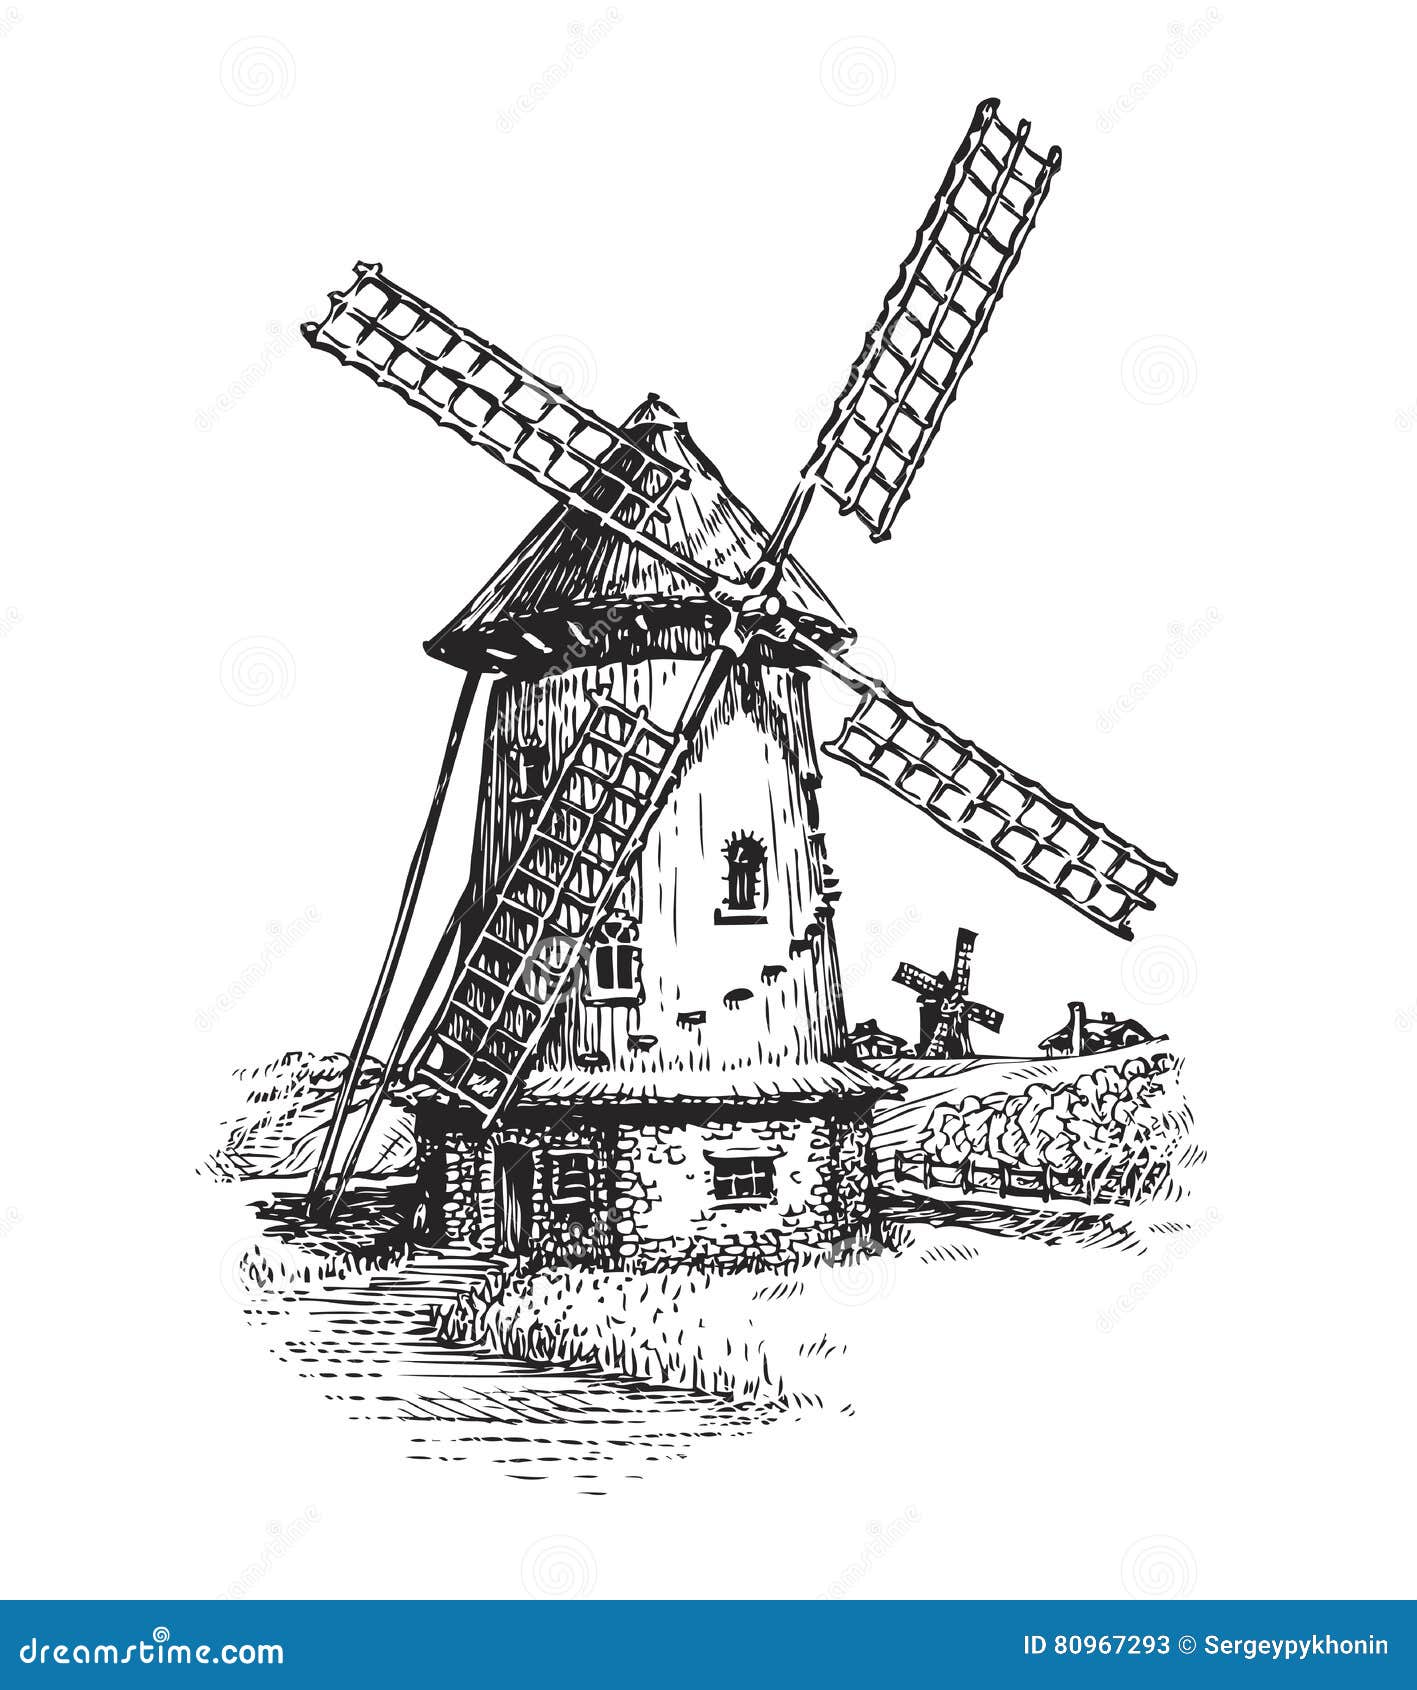 Ilustração em aquarela de um moinho de vento. o ícone de desenho à